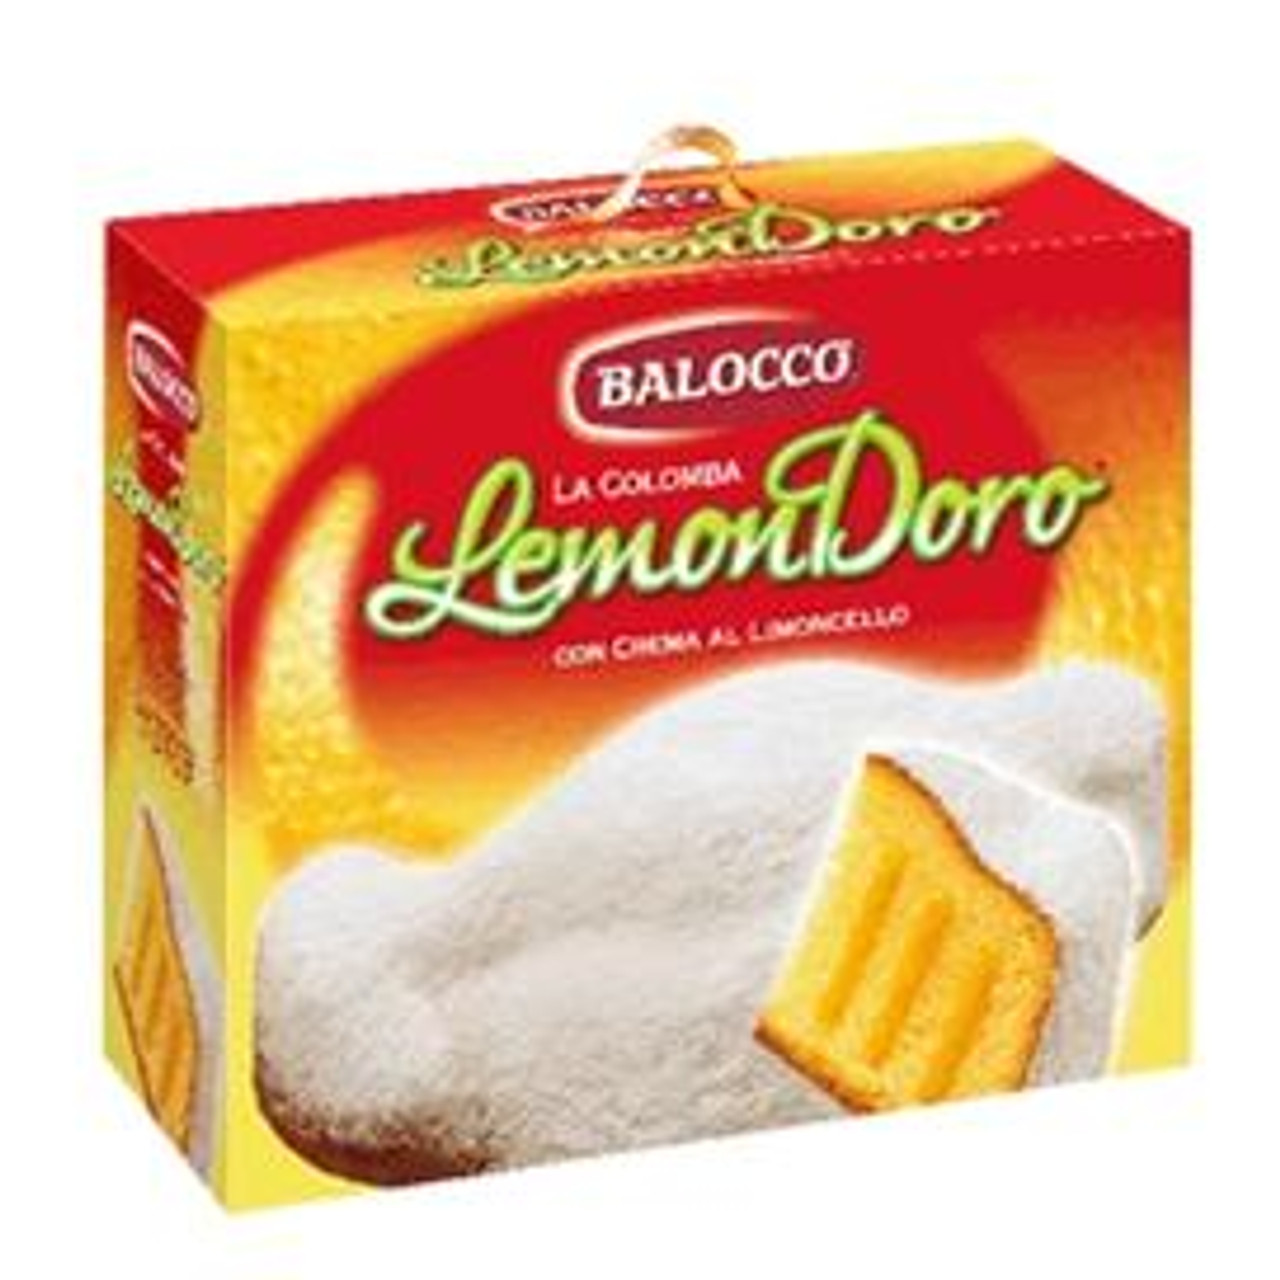 Balocco Colomba Lemondoro